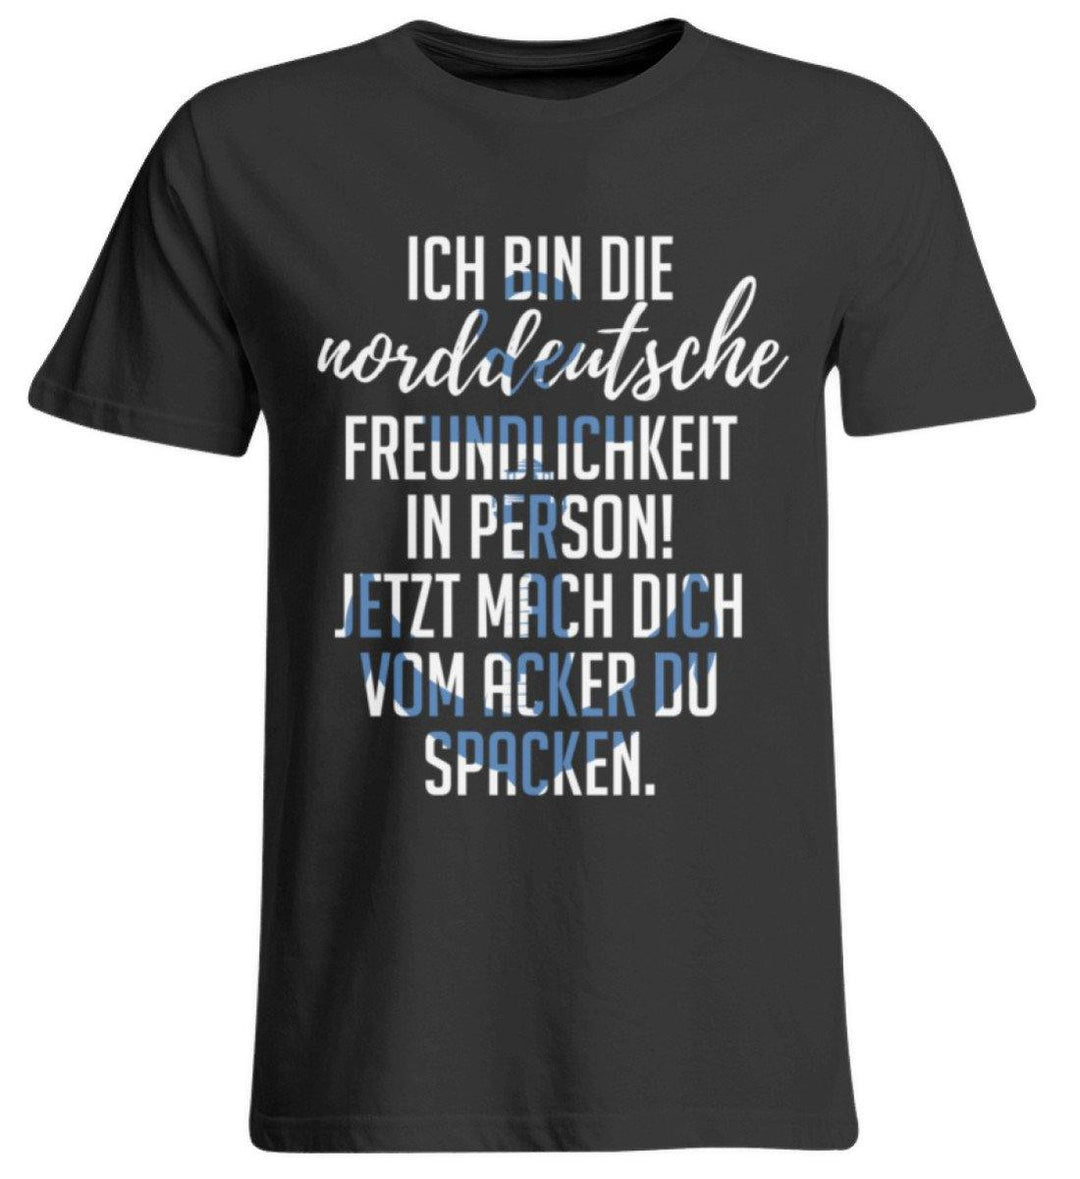 Norddeutsche Freundlichkeit  - Übergrößenshirt - Words on Shirts Sag es mit dem Mittelfinger Shirts Hoodies Sweatshirt Taschen Gymsack Spruch Sprüche Statement